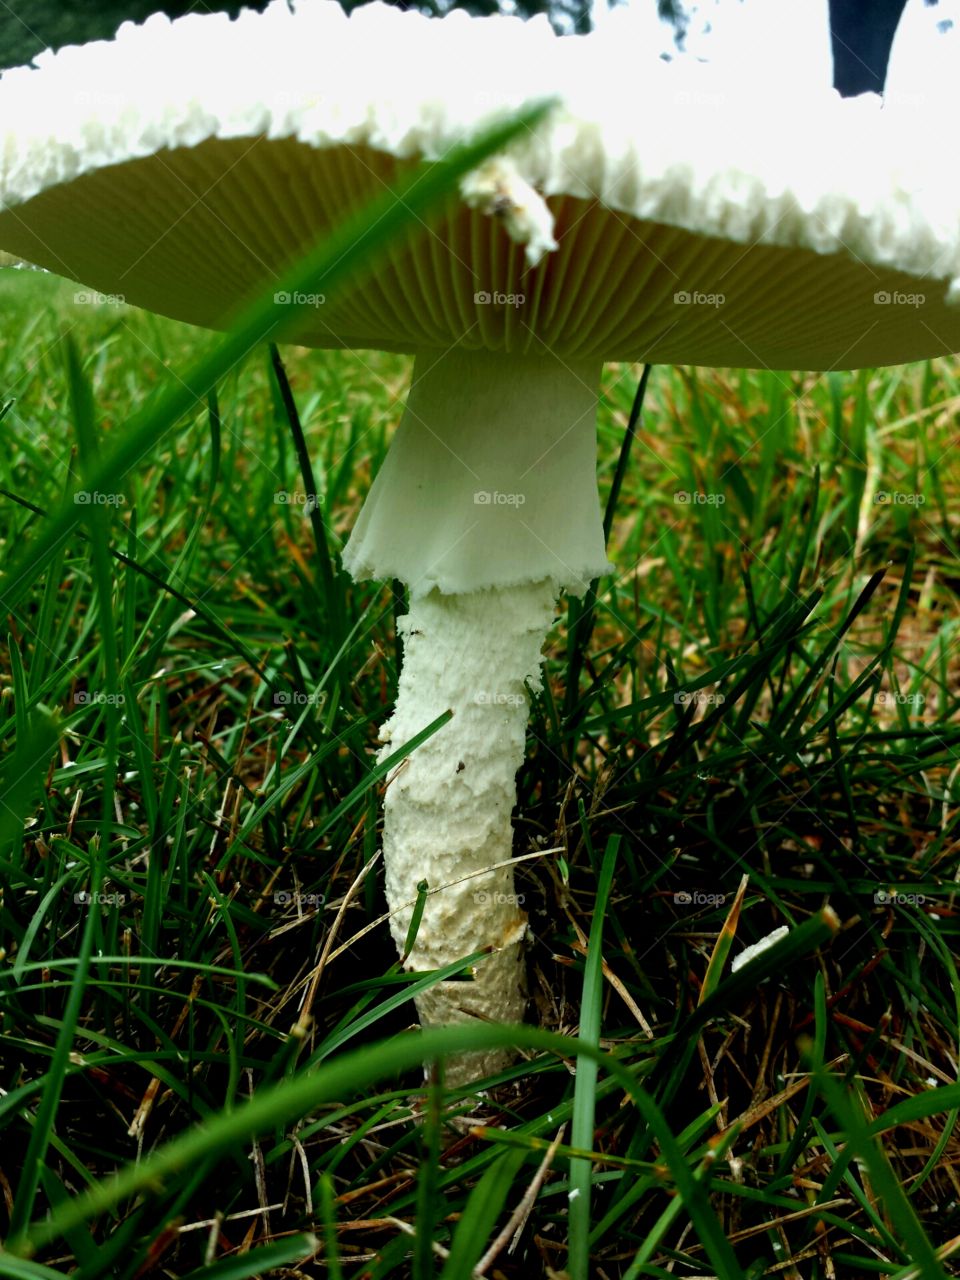 under a mushroom